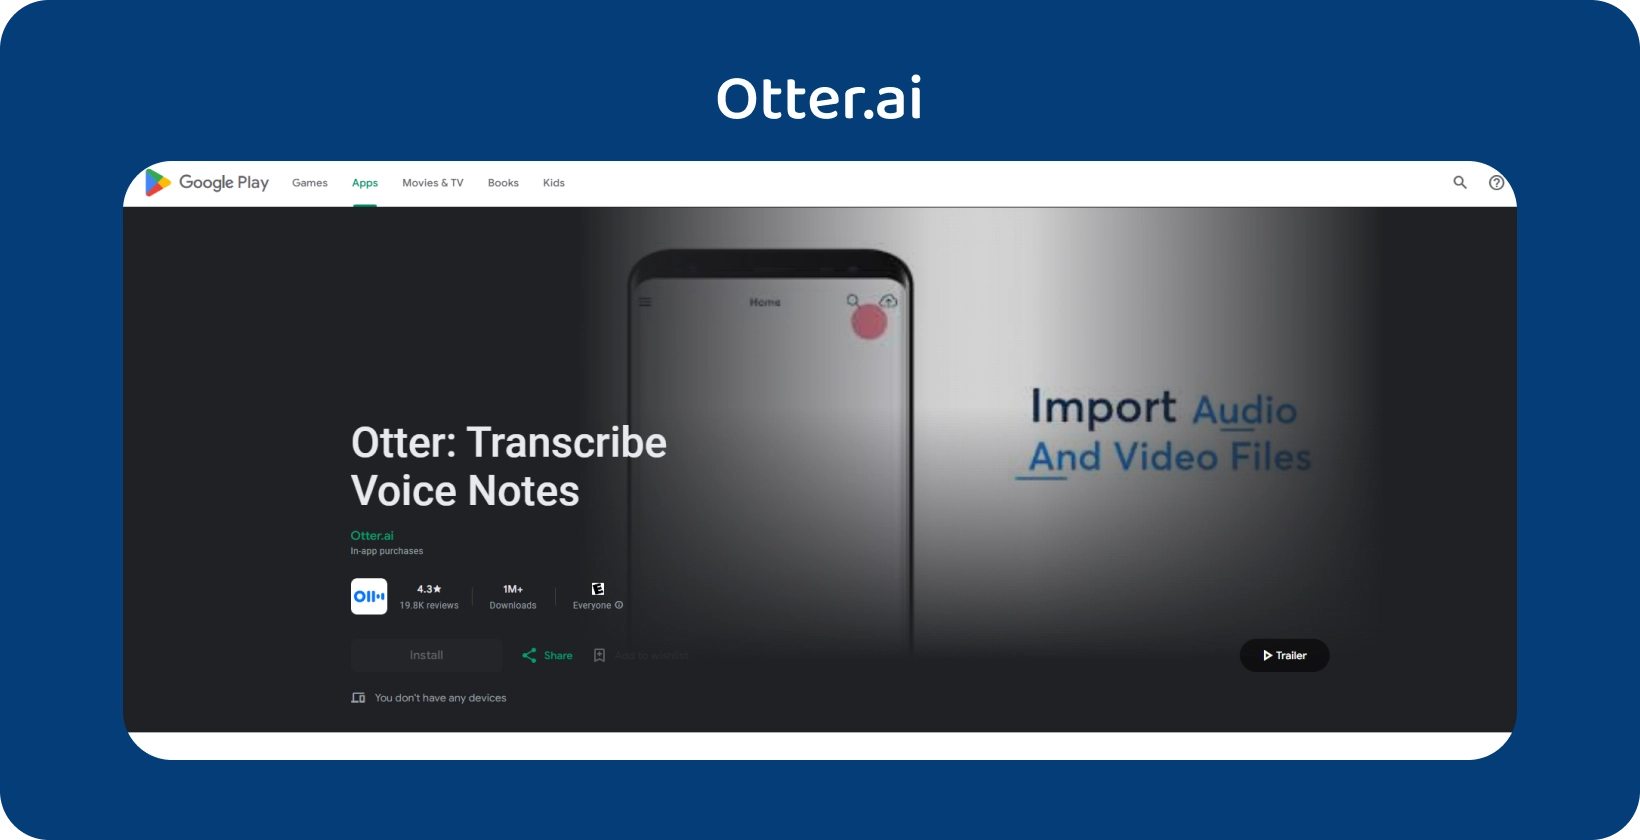 Google Play पर Otter.ai ऐप, जिसमें वॉयस नोट ट्रांसक्रिप्शन और ऑडियो/वीडियो फ़ाइल आयात क्षमताएं हैं।